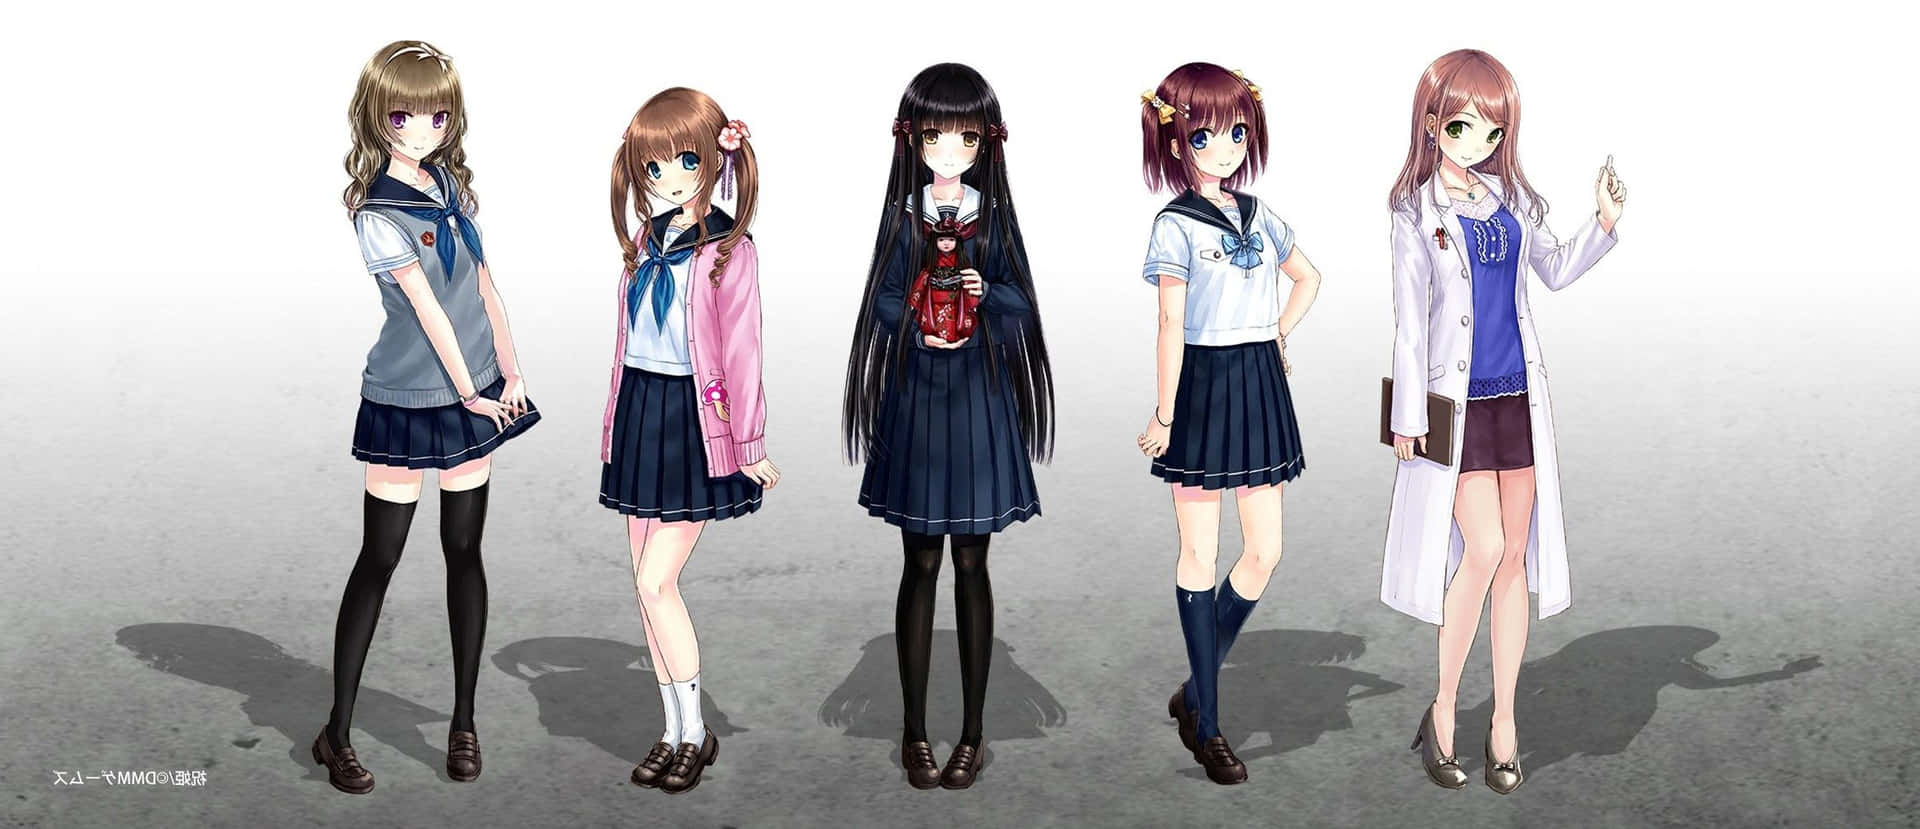 Anime Girls Wearing Various Uniforms Wallpaper